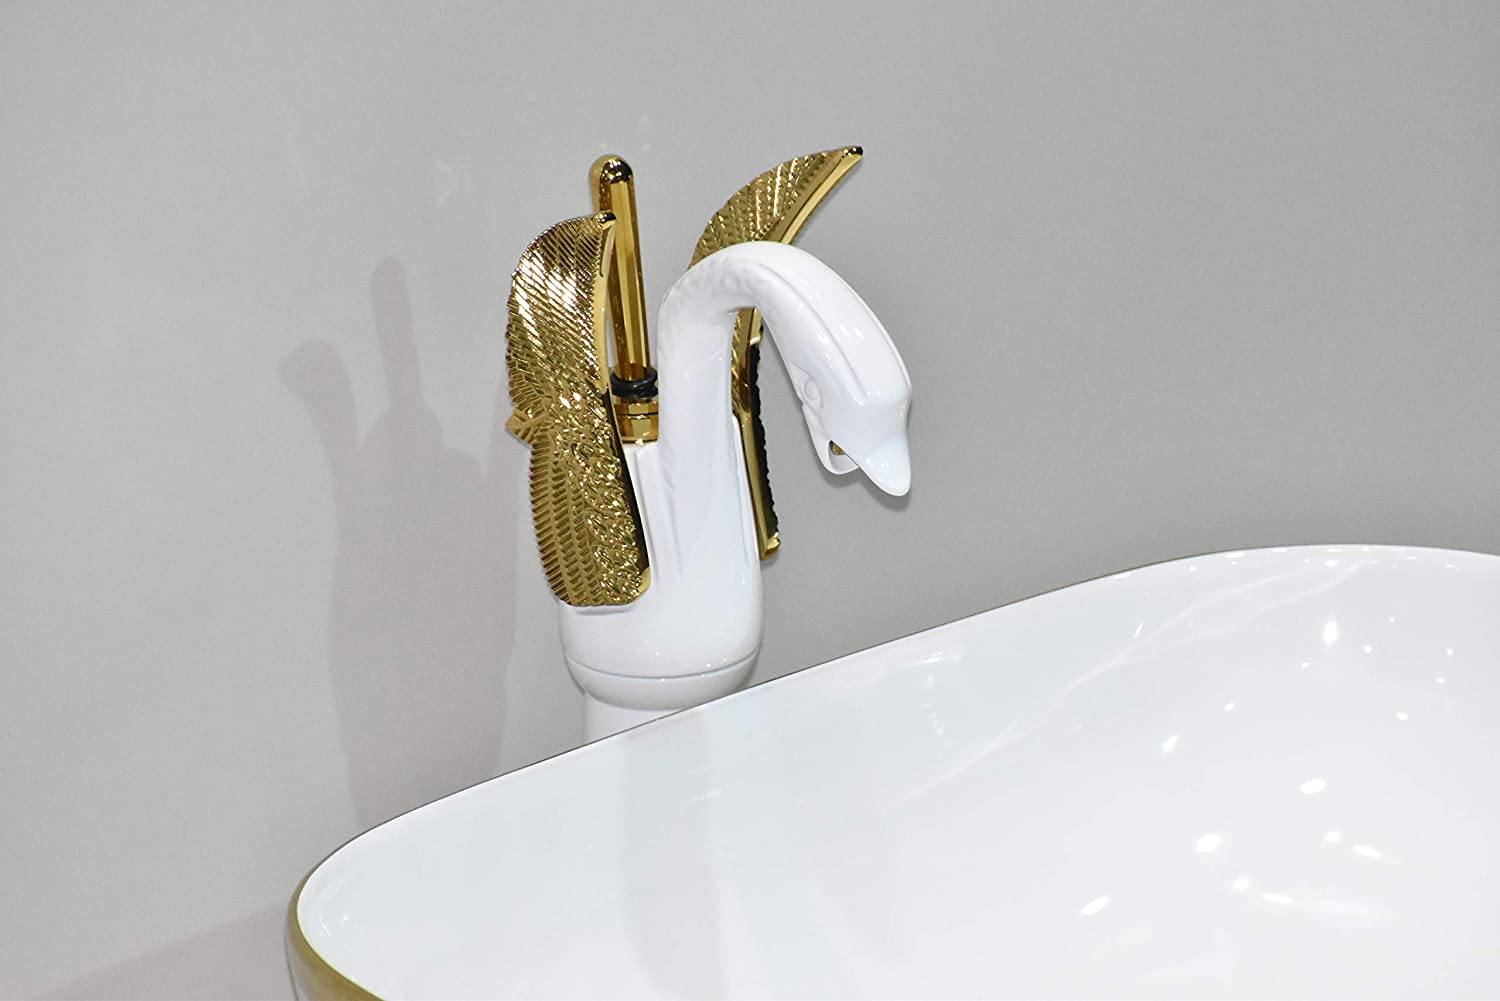 Designer Ceramic Wash Basin Vessel Sink Over or Above Counter Top Wash Basin for Bathroom Rectangle Shape Golden White 45.5 X 32 X 13.5 cm Only Wash Basin - Bath Outlet